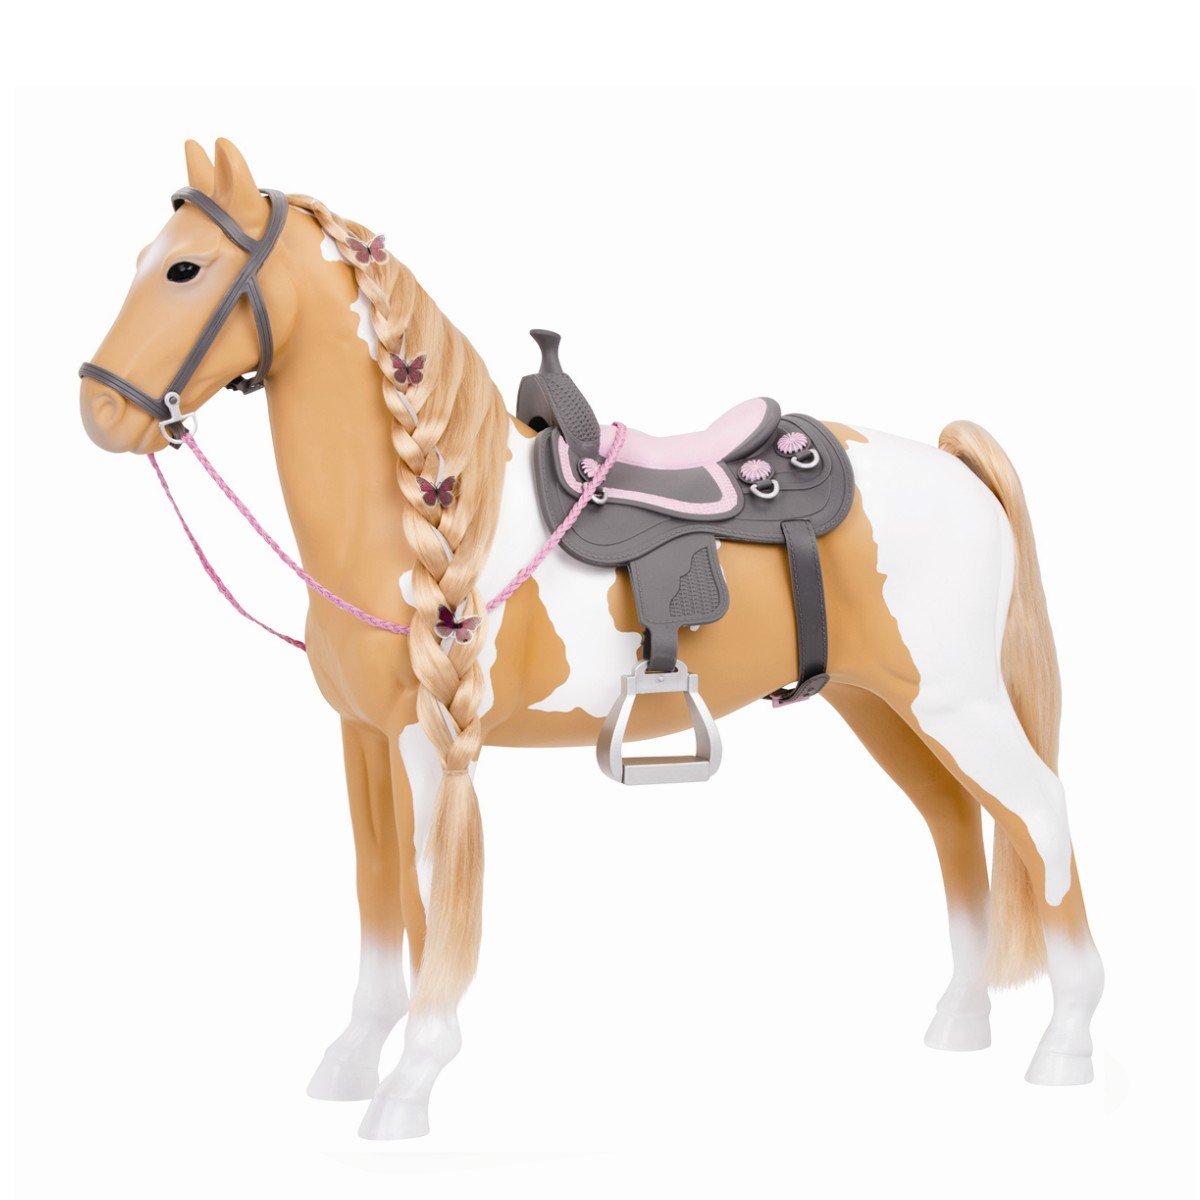 Our Generation - Palomino Pferd mit Haarschmuck (738030)